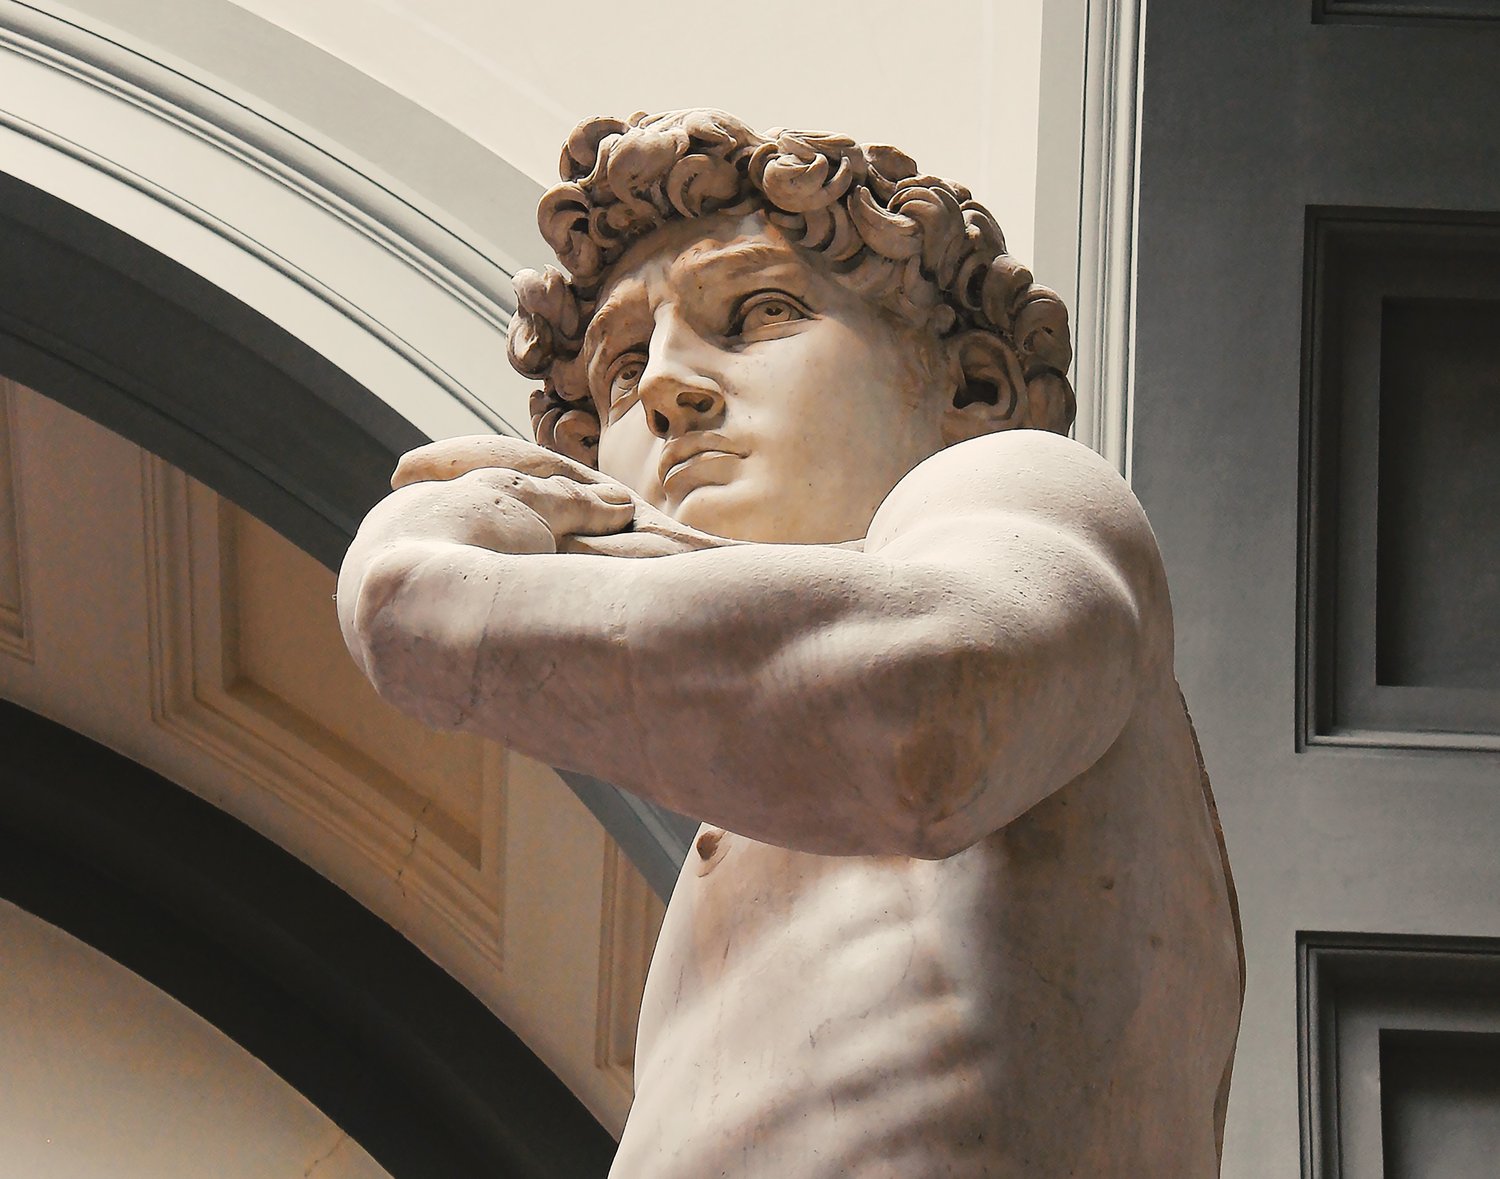 David masterpiece by Michelangelo.